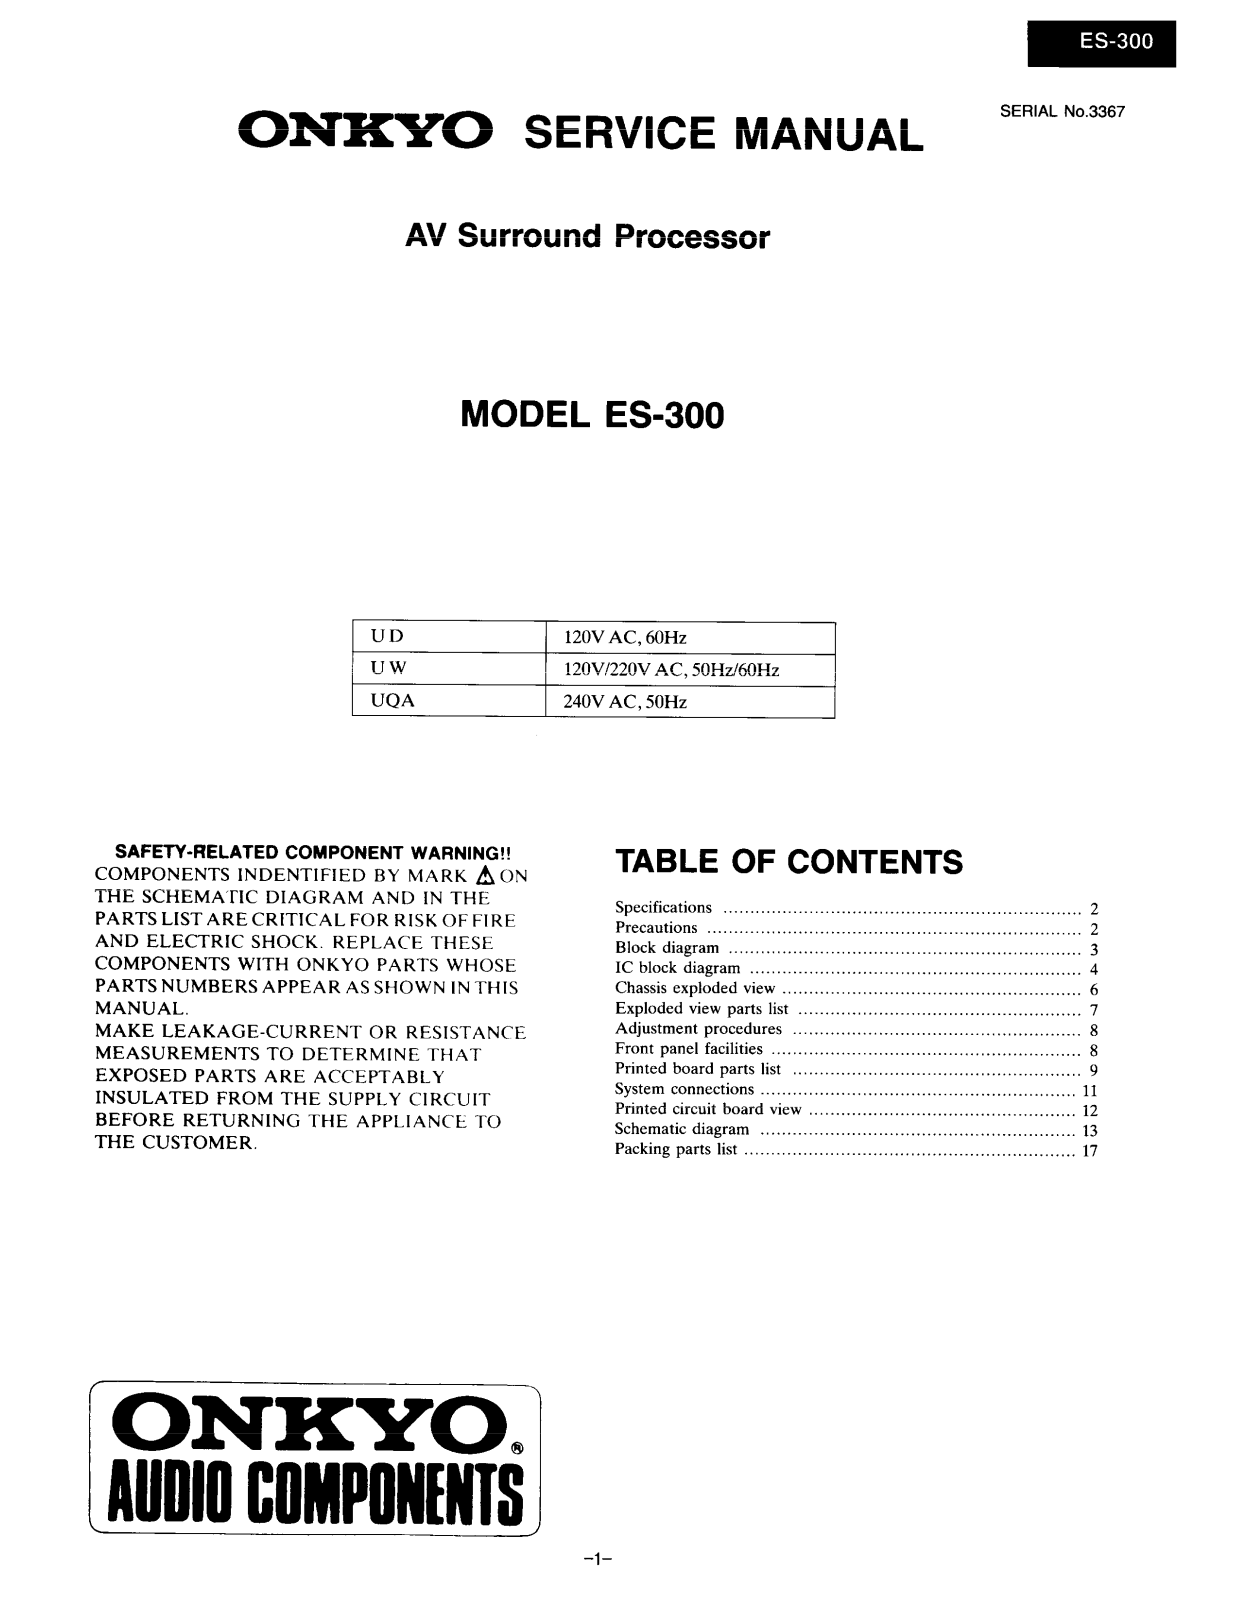 Onkyo ES-300 Service manual